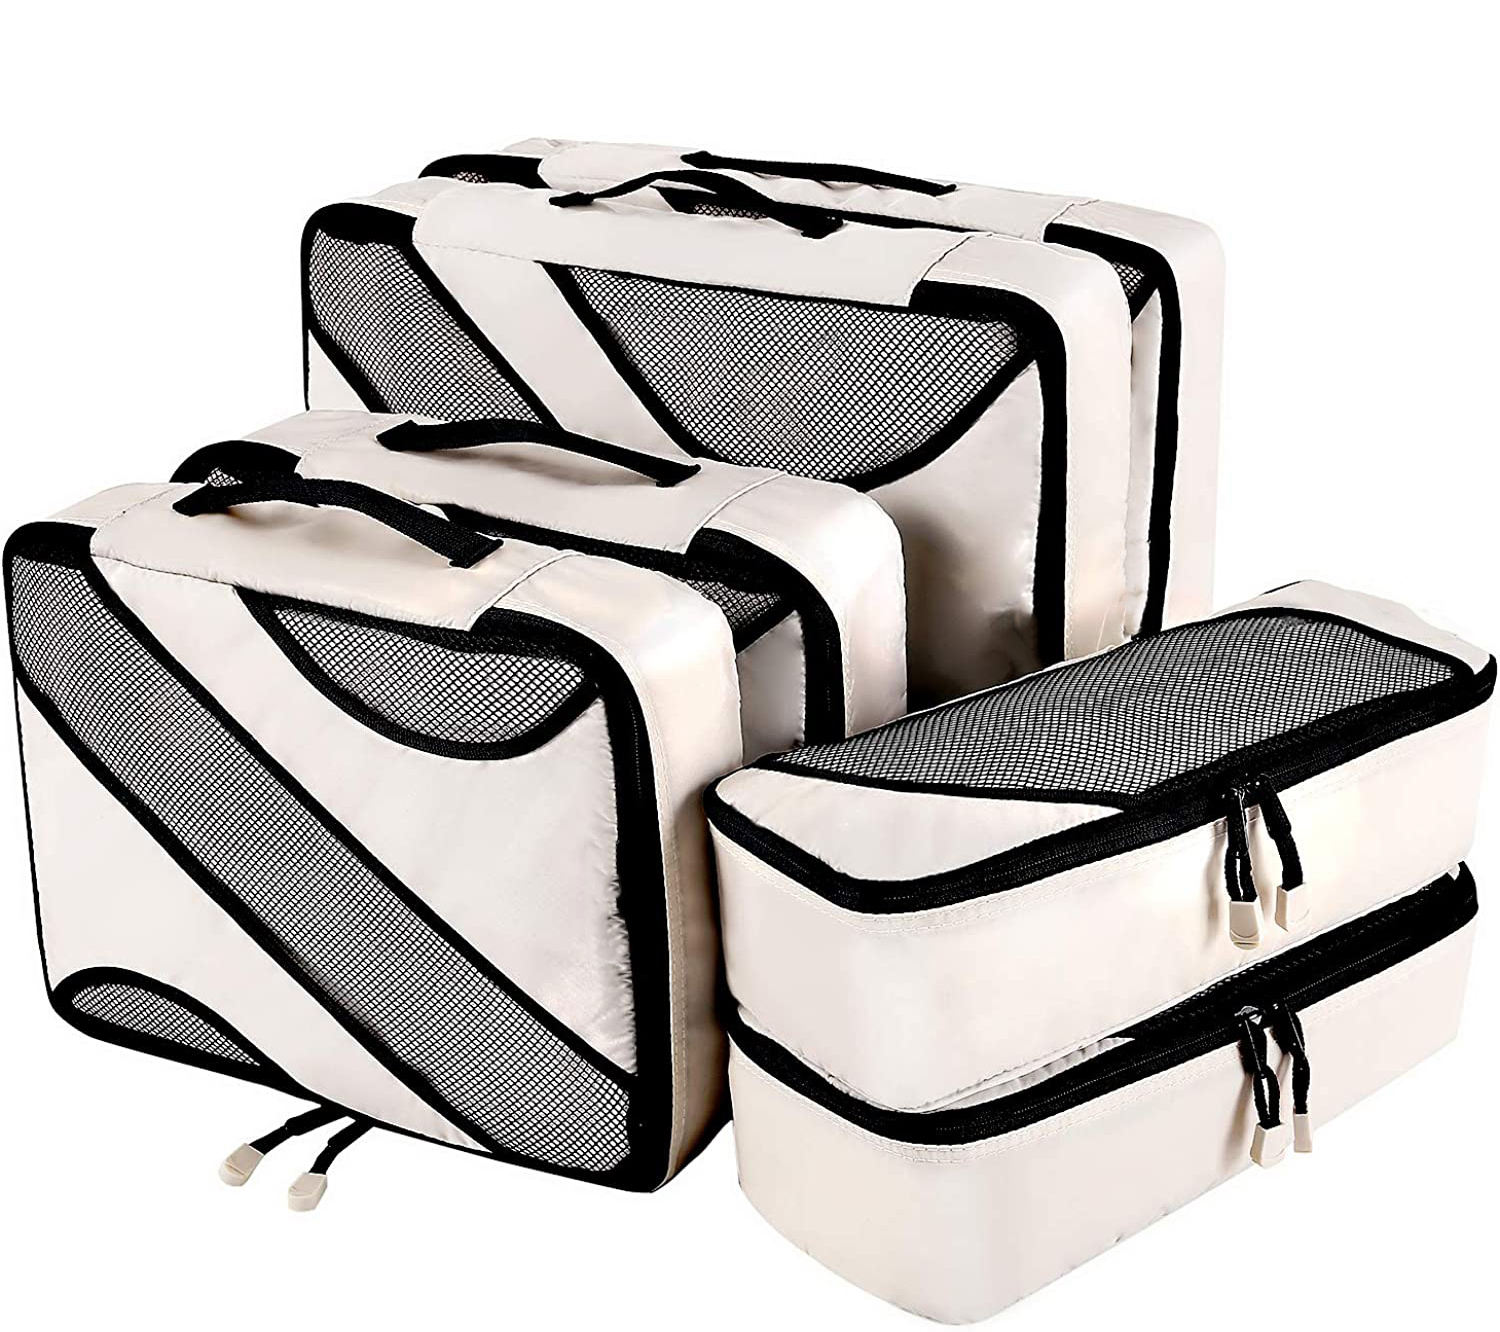 6 Set Packwürfel 3 verschiedene Größen Reisegepäck Verpackung Organizer Tasche Reisetasche Organizer für Kleidung Schuhe